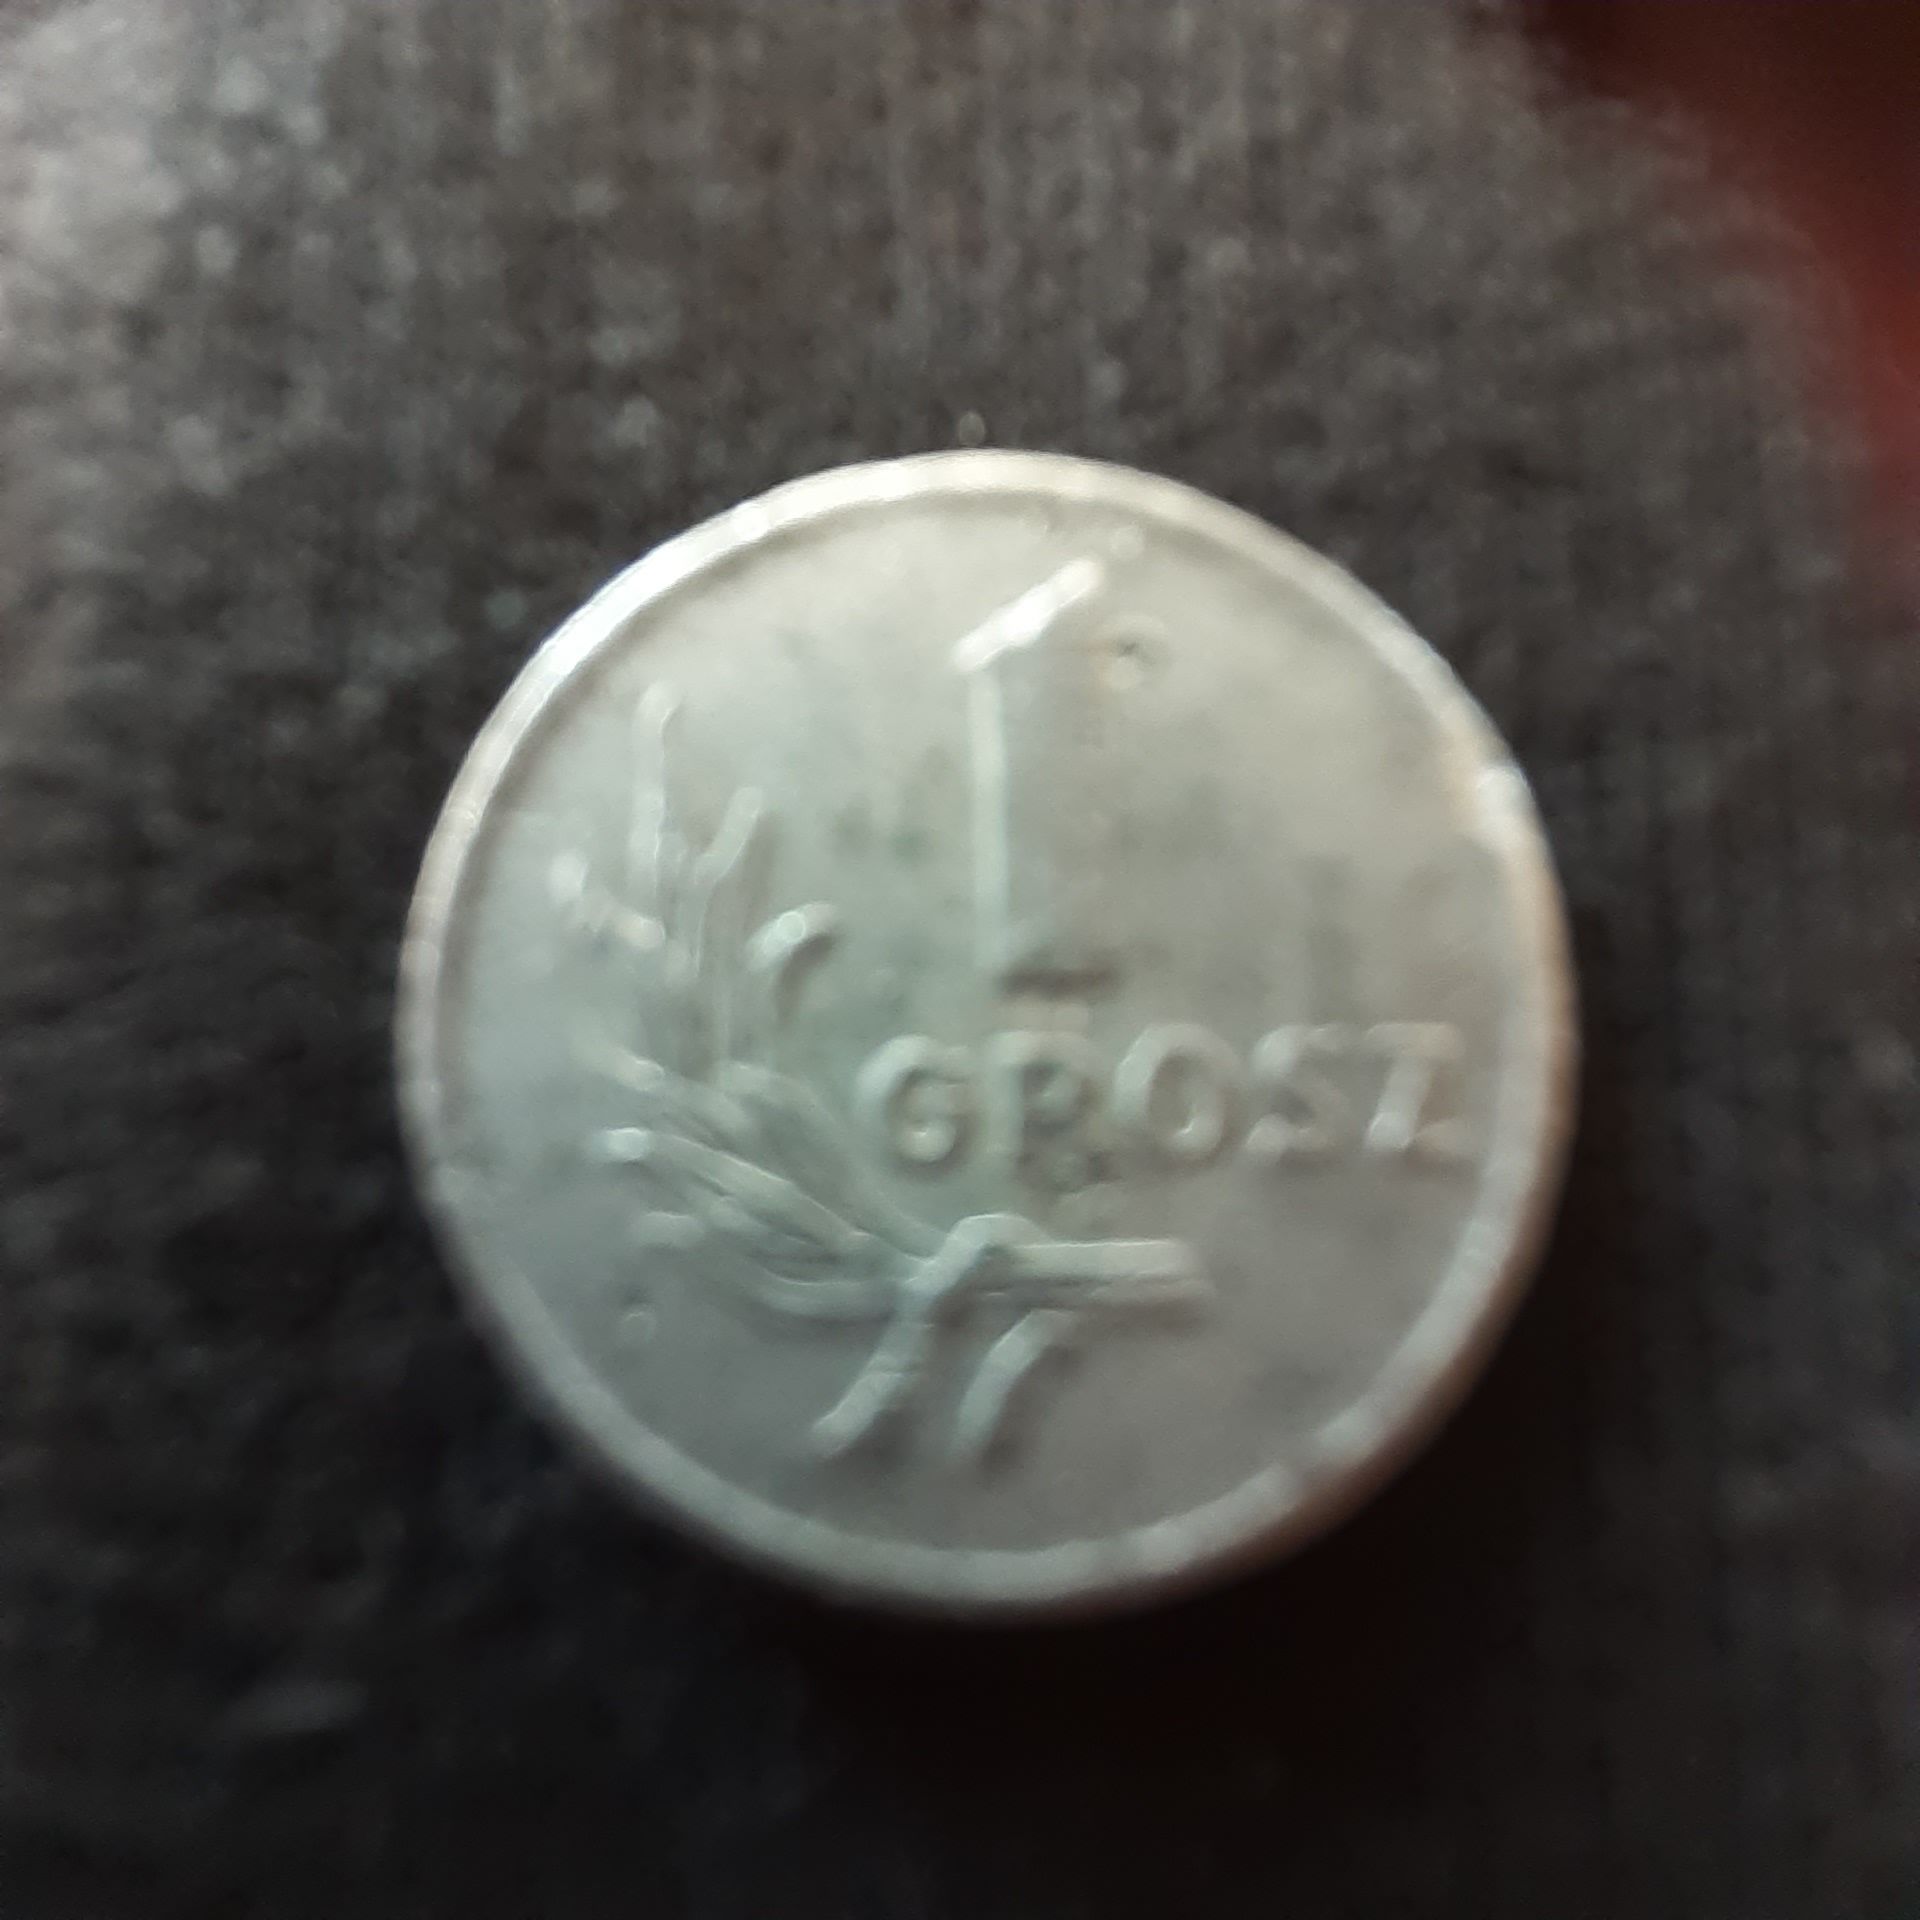 Sprzedam monetę    1gr   z   1949roku    bez  znaku mennicy.